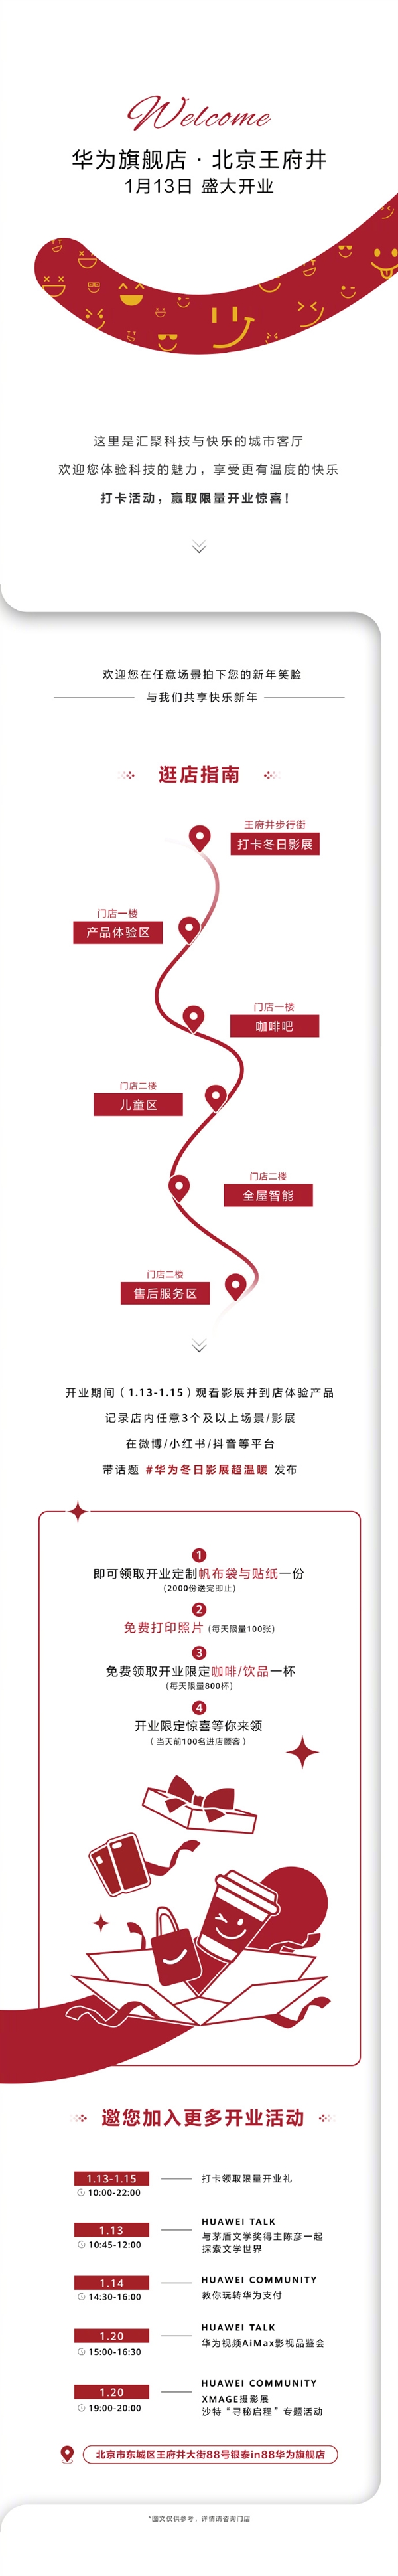 北京也有华为旗舰店了！王府井首家华为旗舰店将于1月13日开业